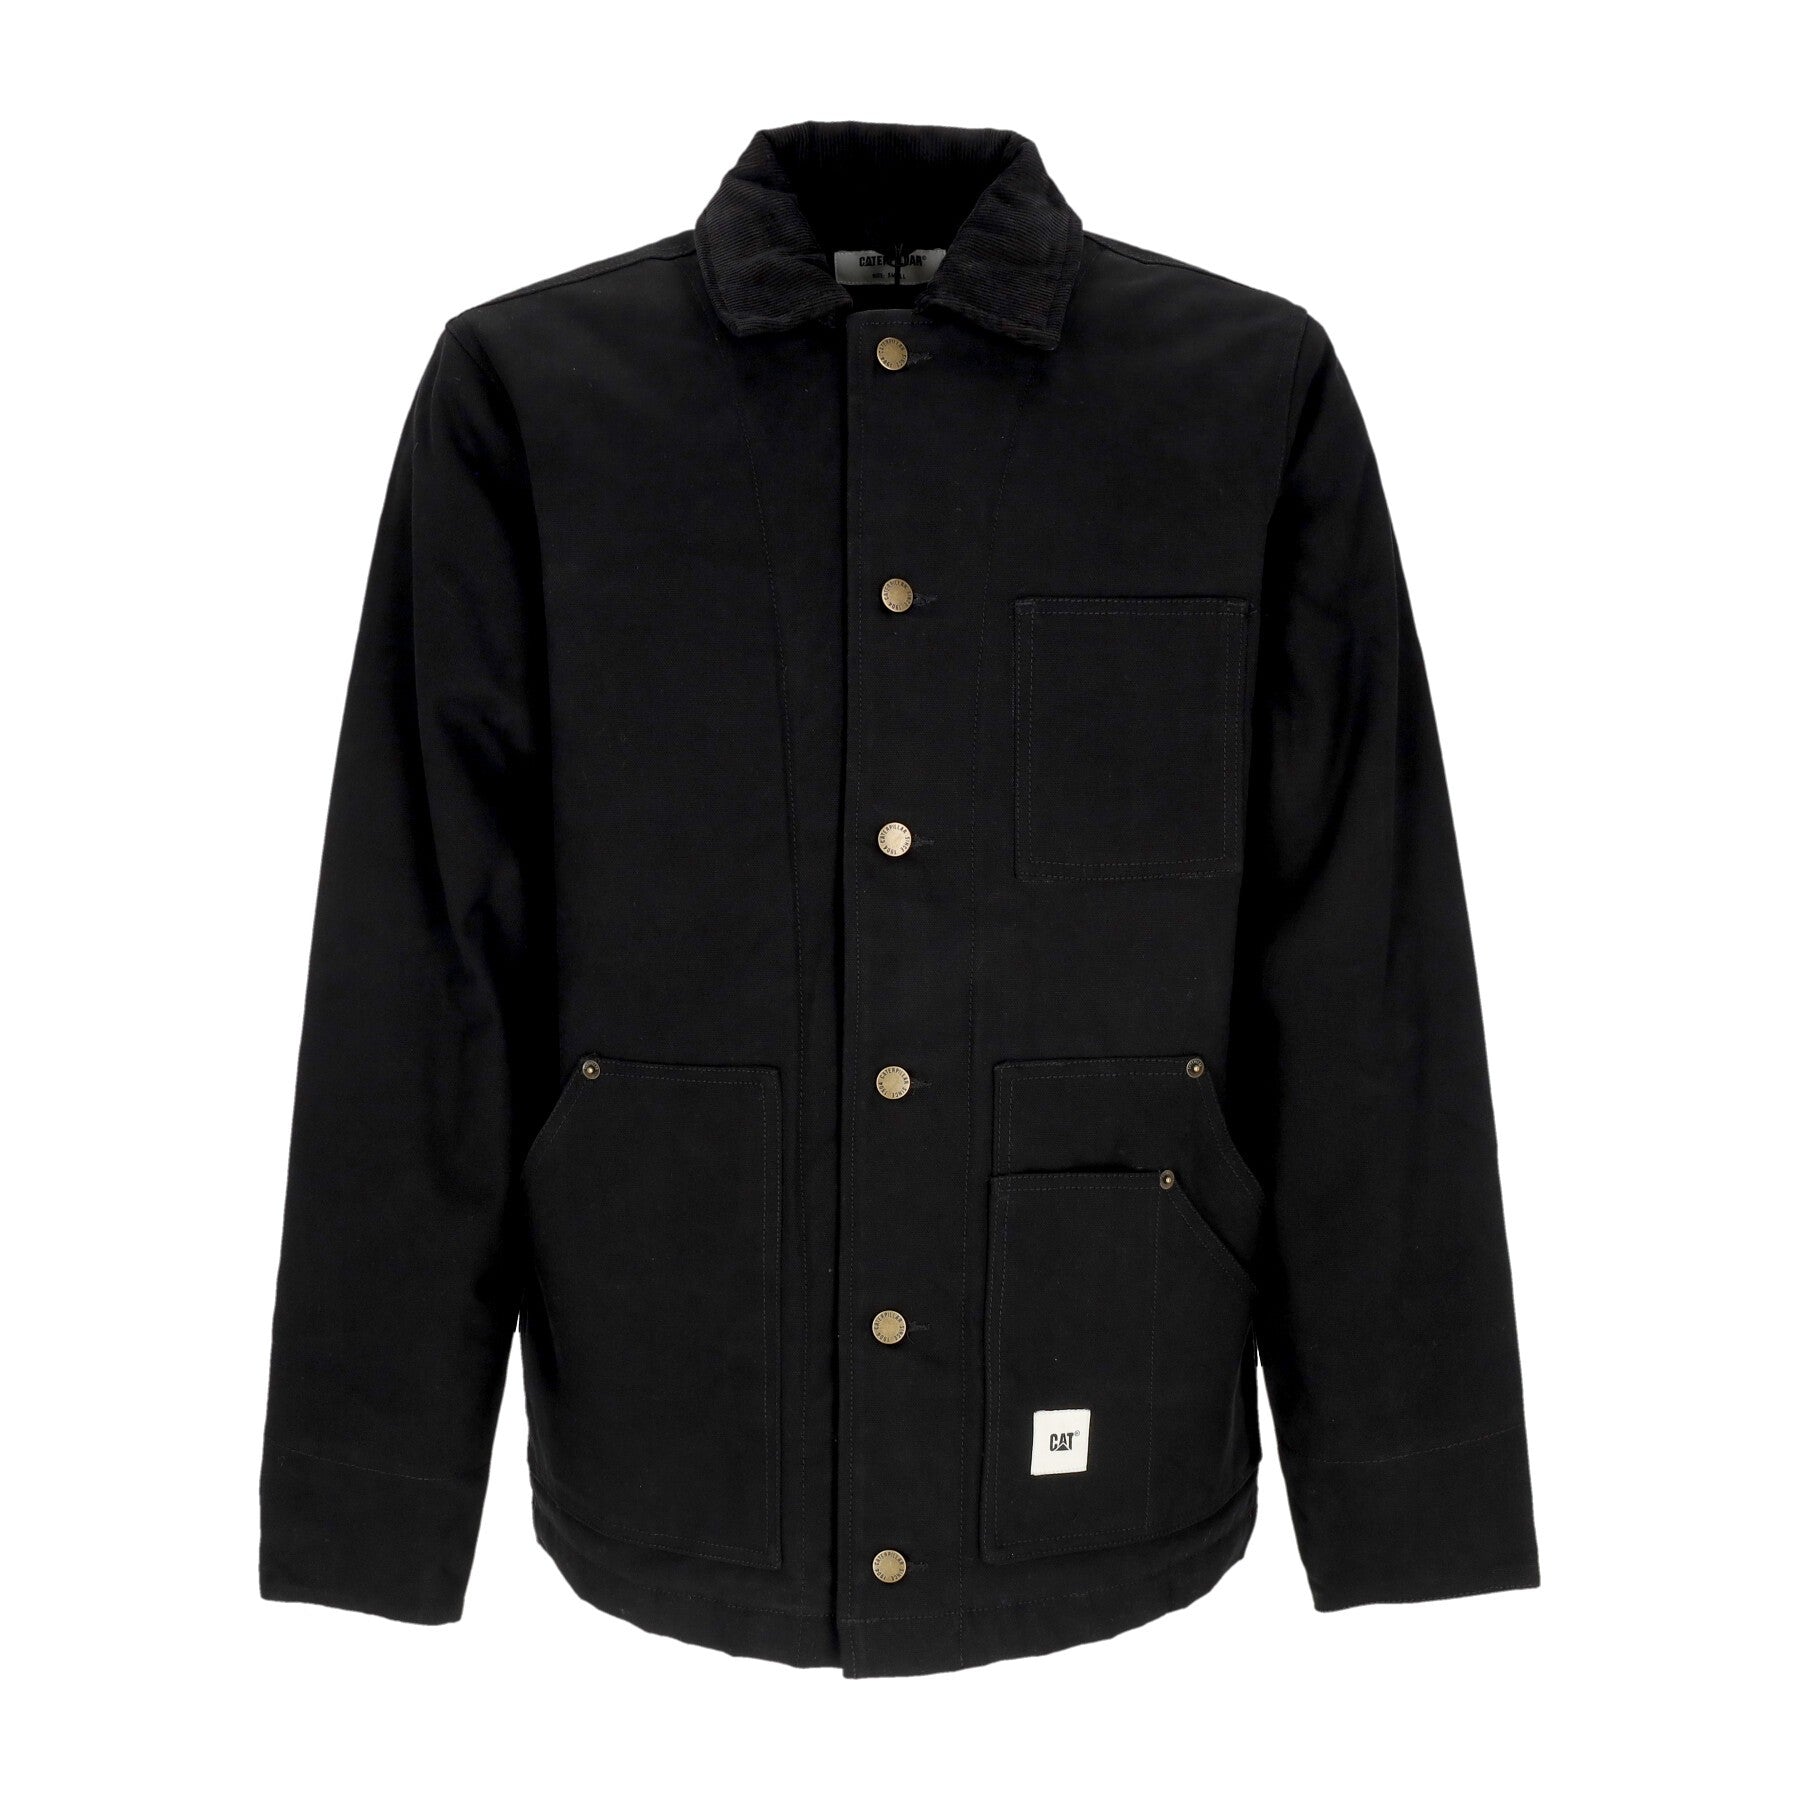 Caterpillar, Giacca Workwear Uomo Epic Jacket, Black